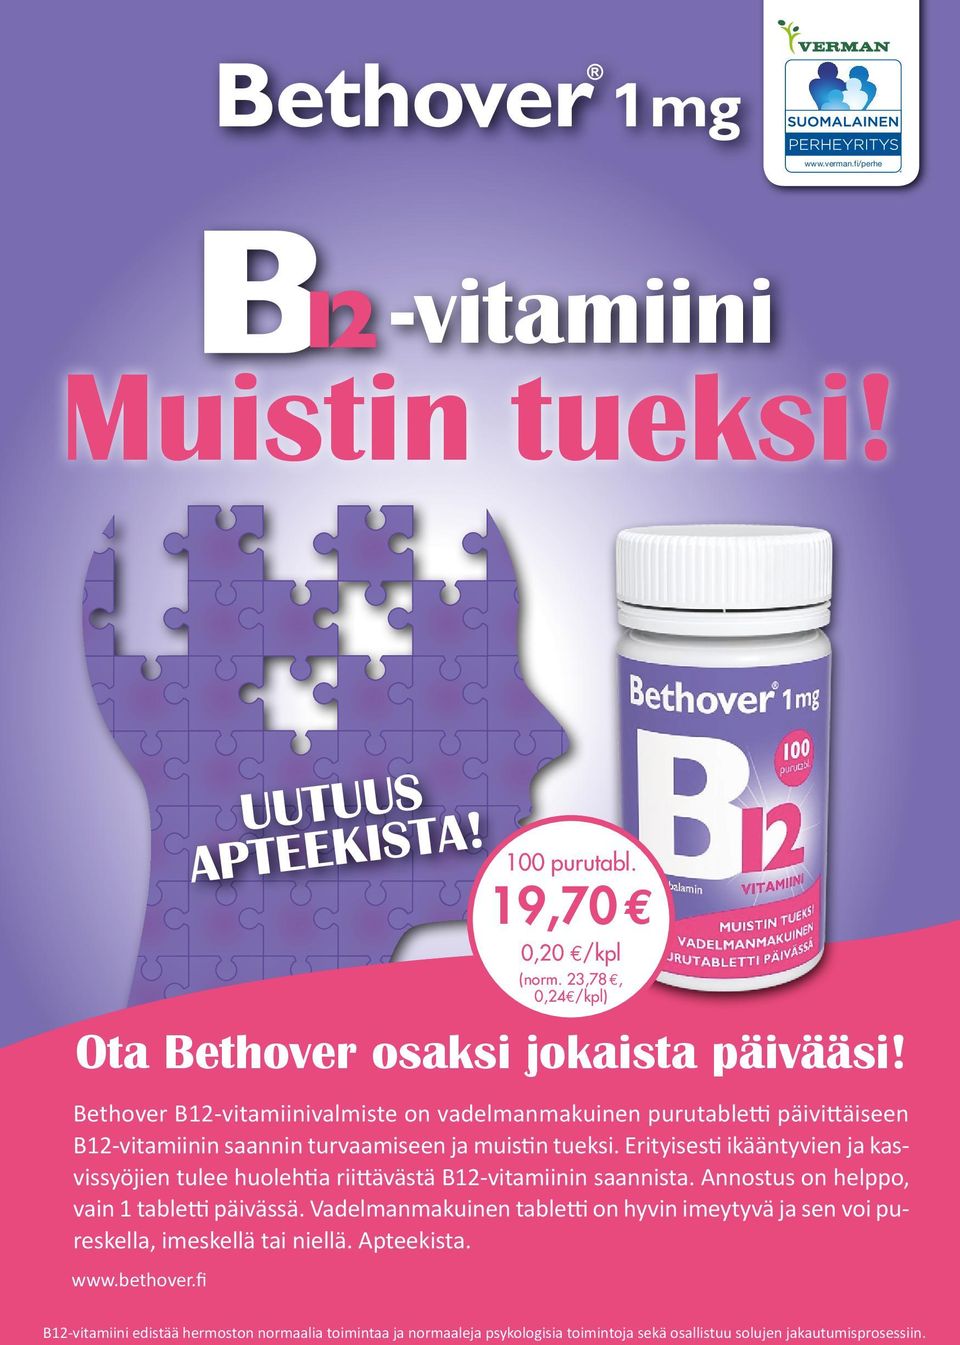 Bethover B12-vitamiinivalmiste on vadelmanmakuinen purutabletti päivittäiseen B12-vitamiinin saannin turvaamiseen ja muistin tueksi.